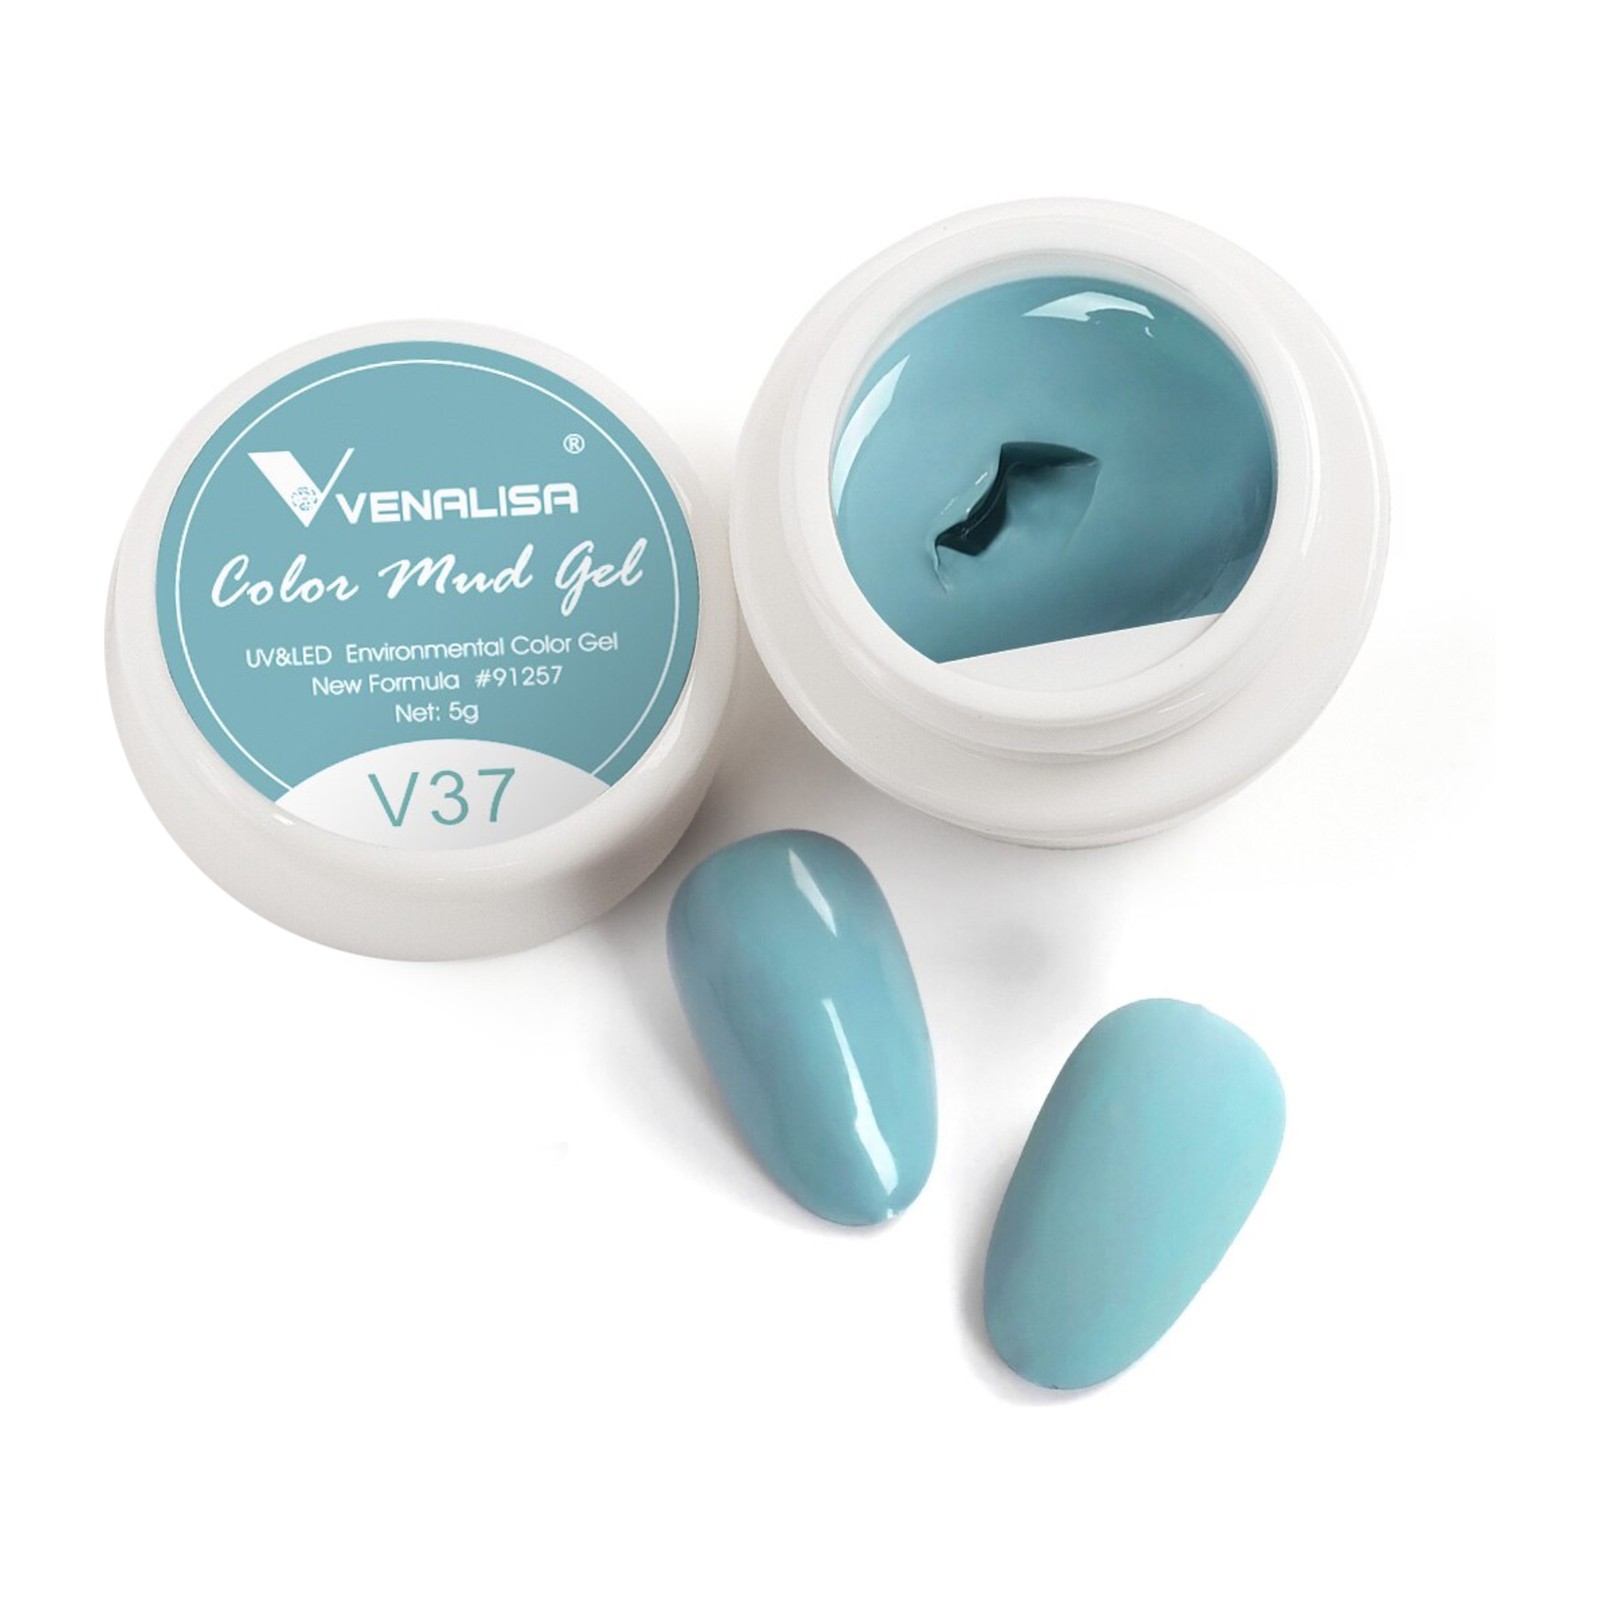 Venalisa -  V37 -  5 ml